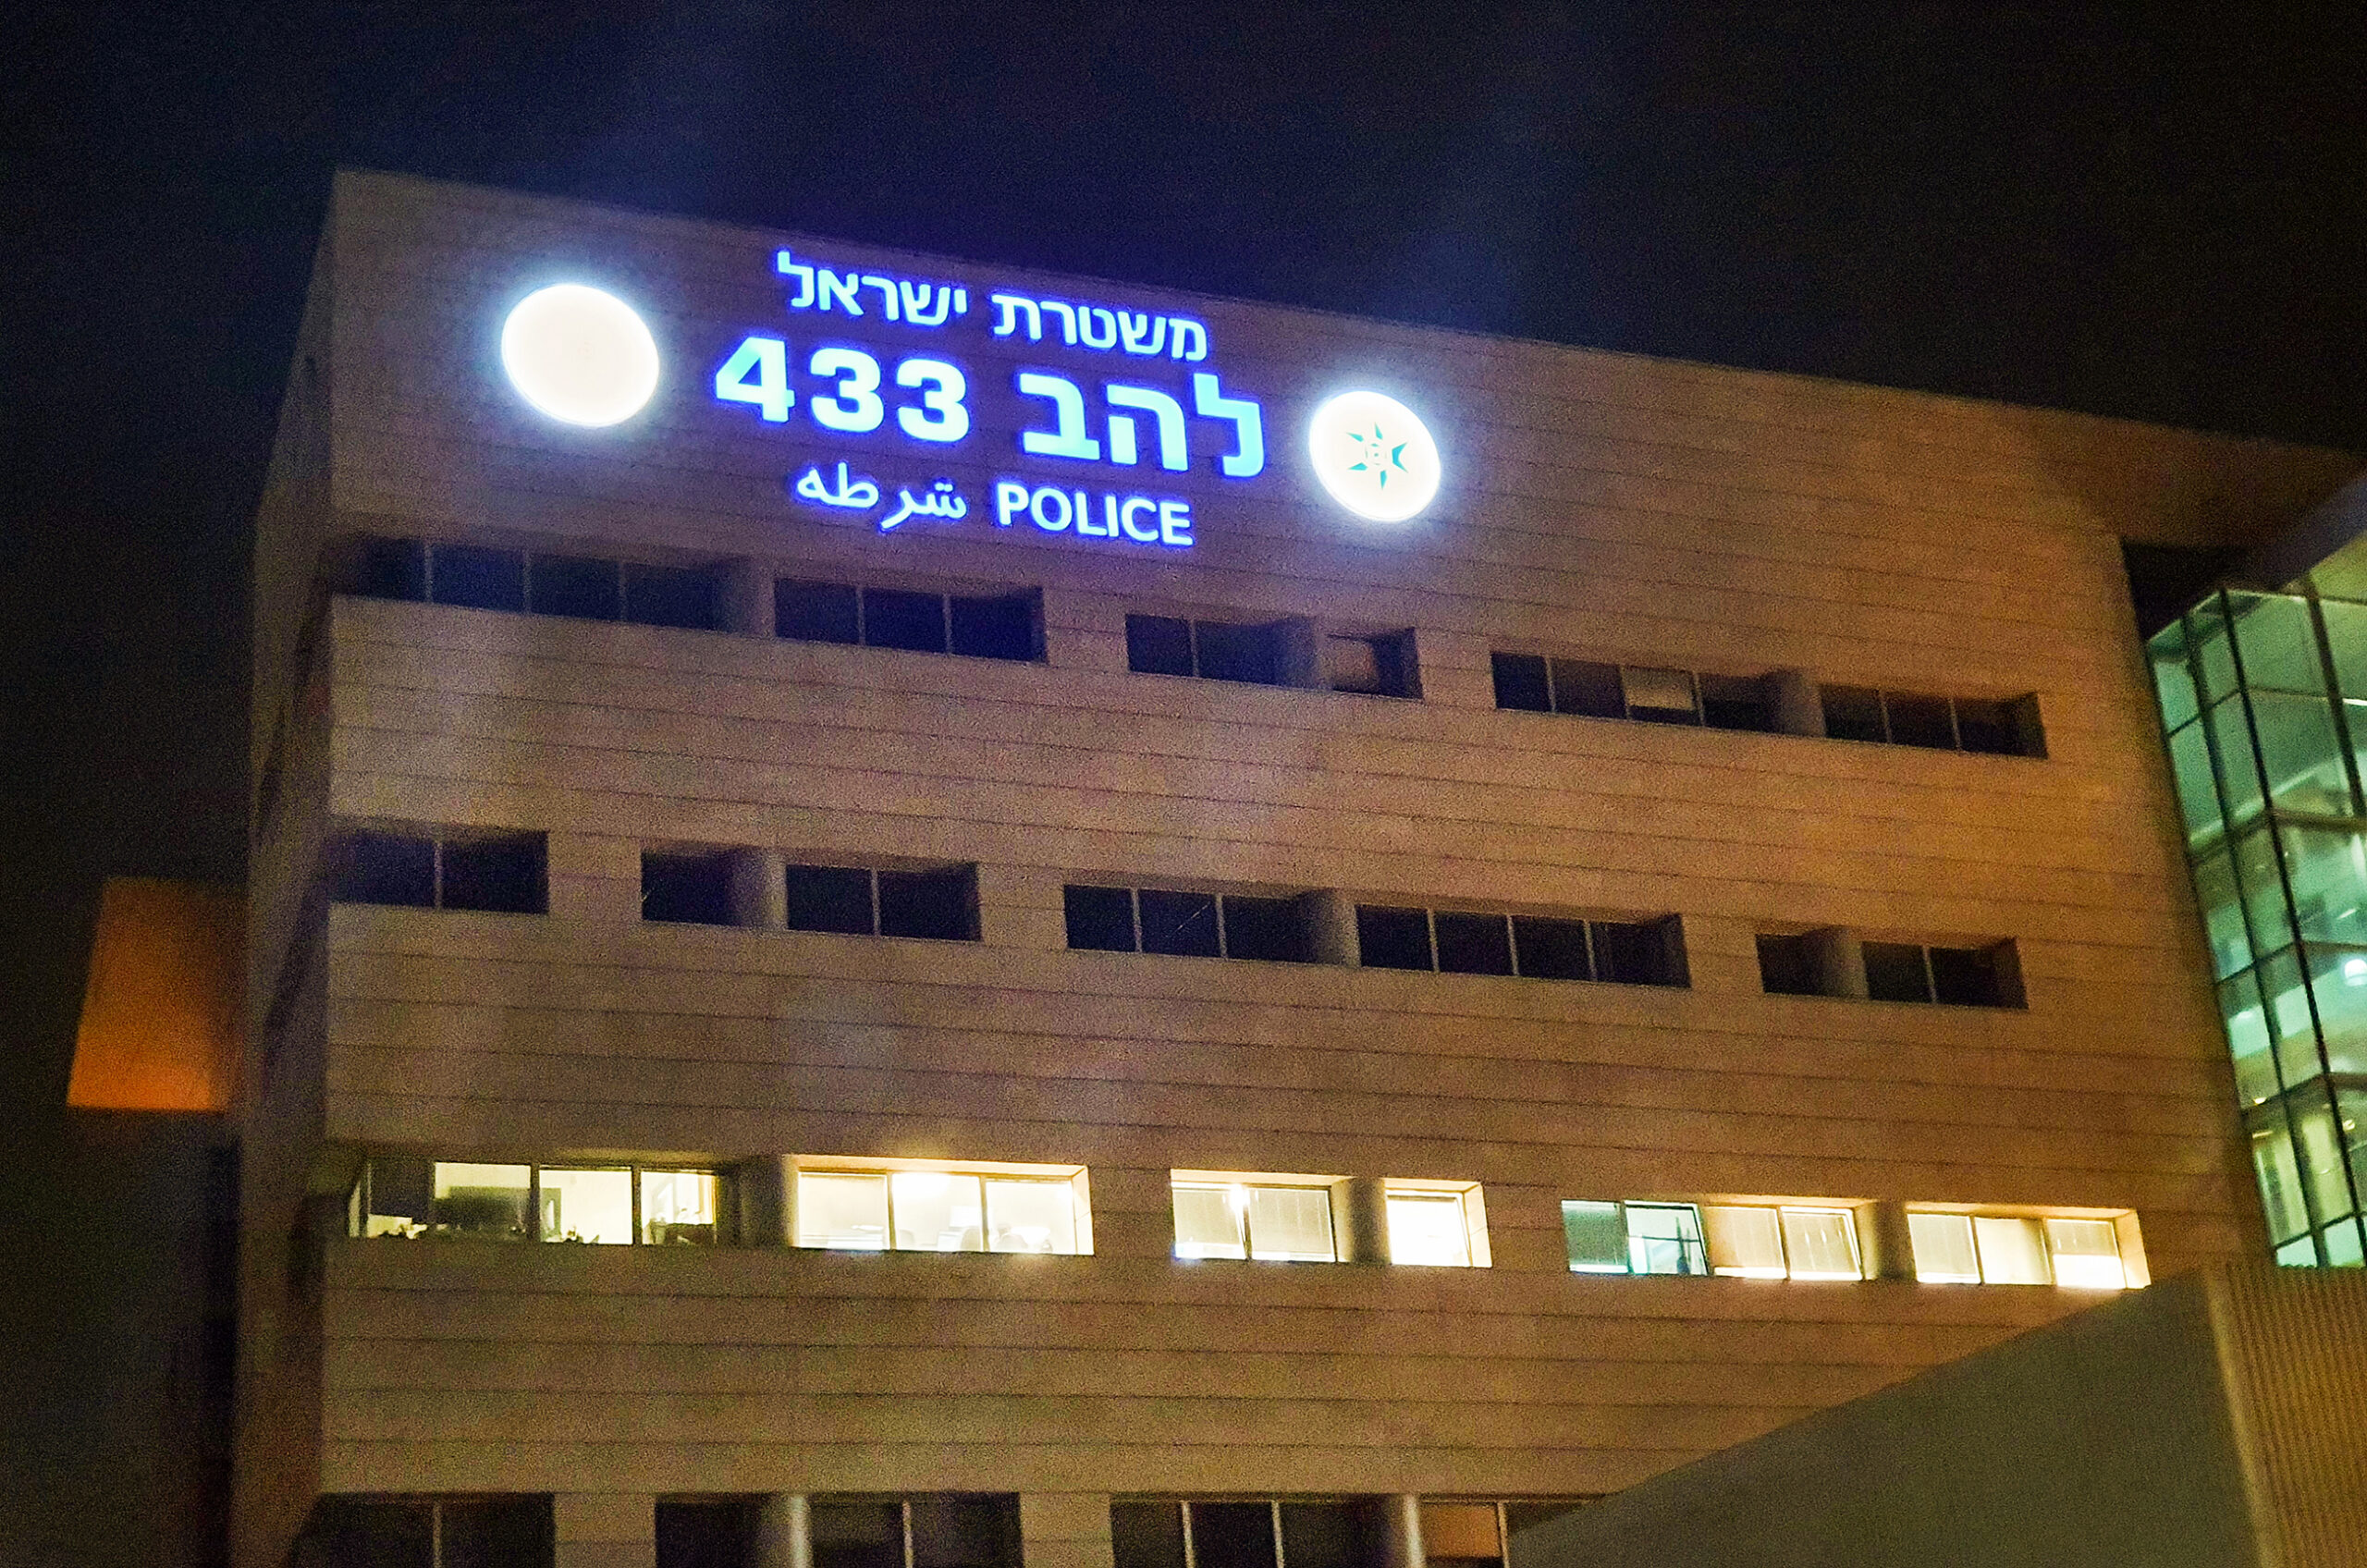 משרדי יחידת להב 433 של משטרת ישראל, לוד (צילום: משה שי)